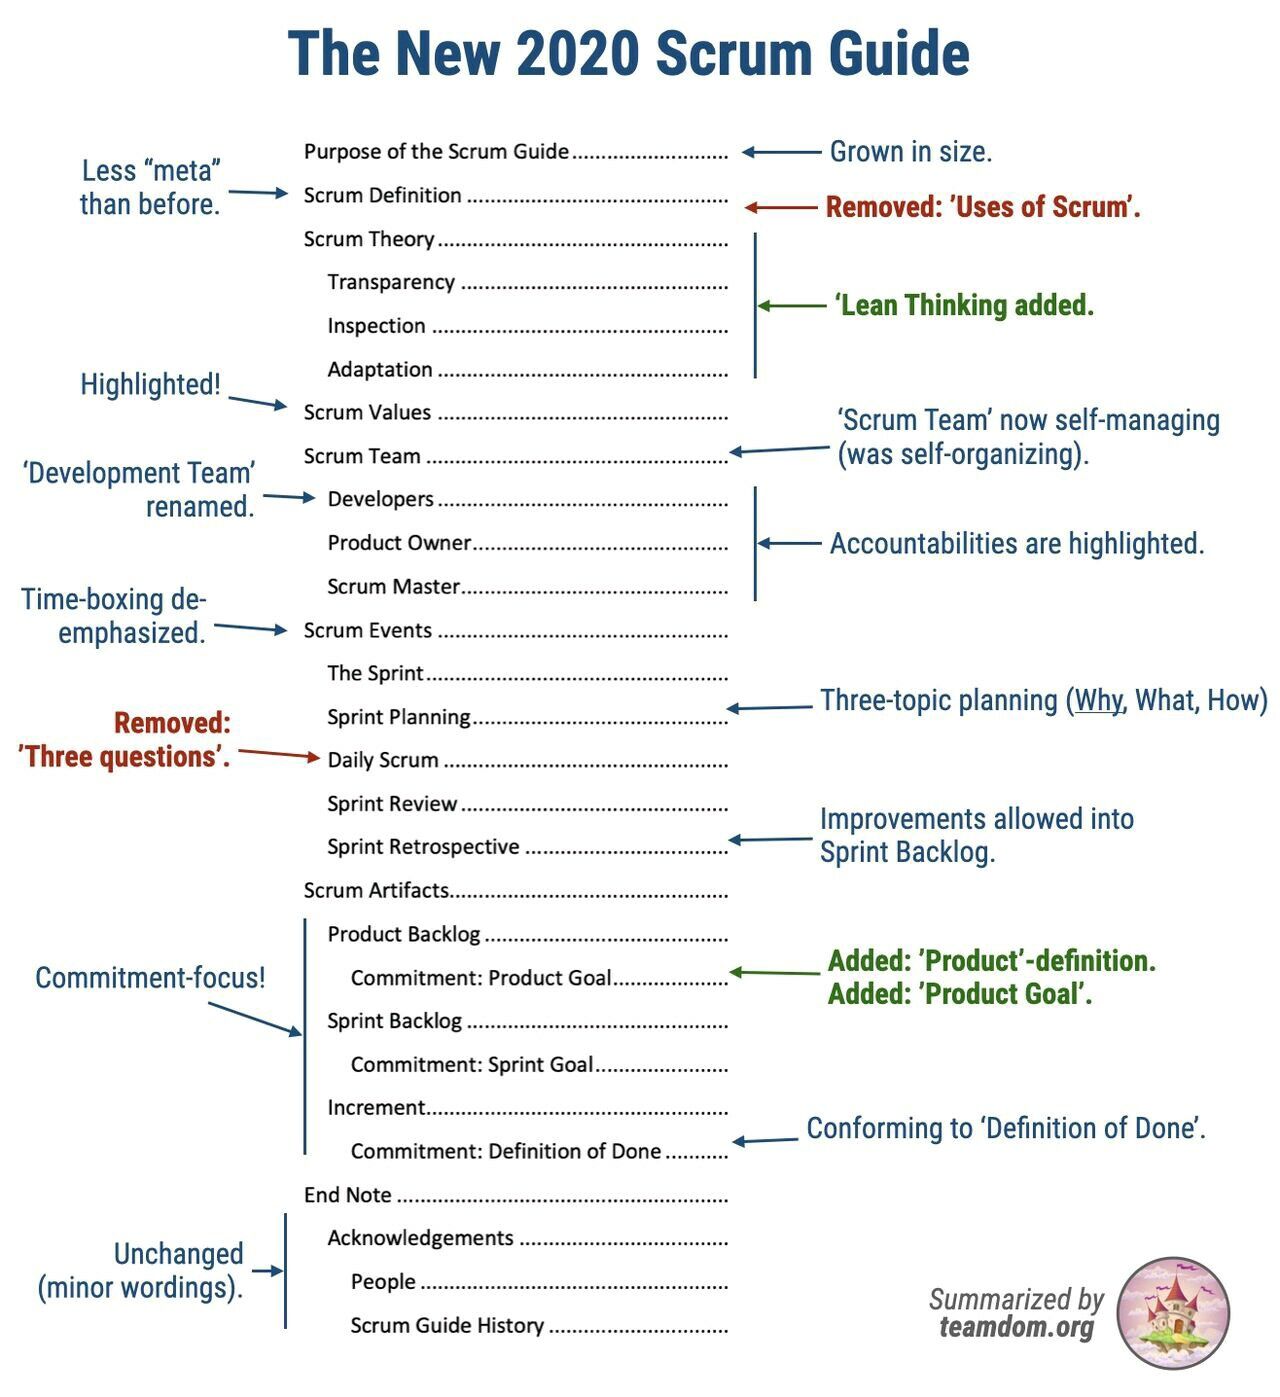 scrum guide 2020